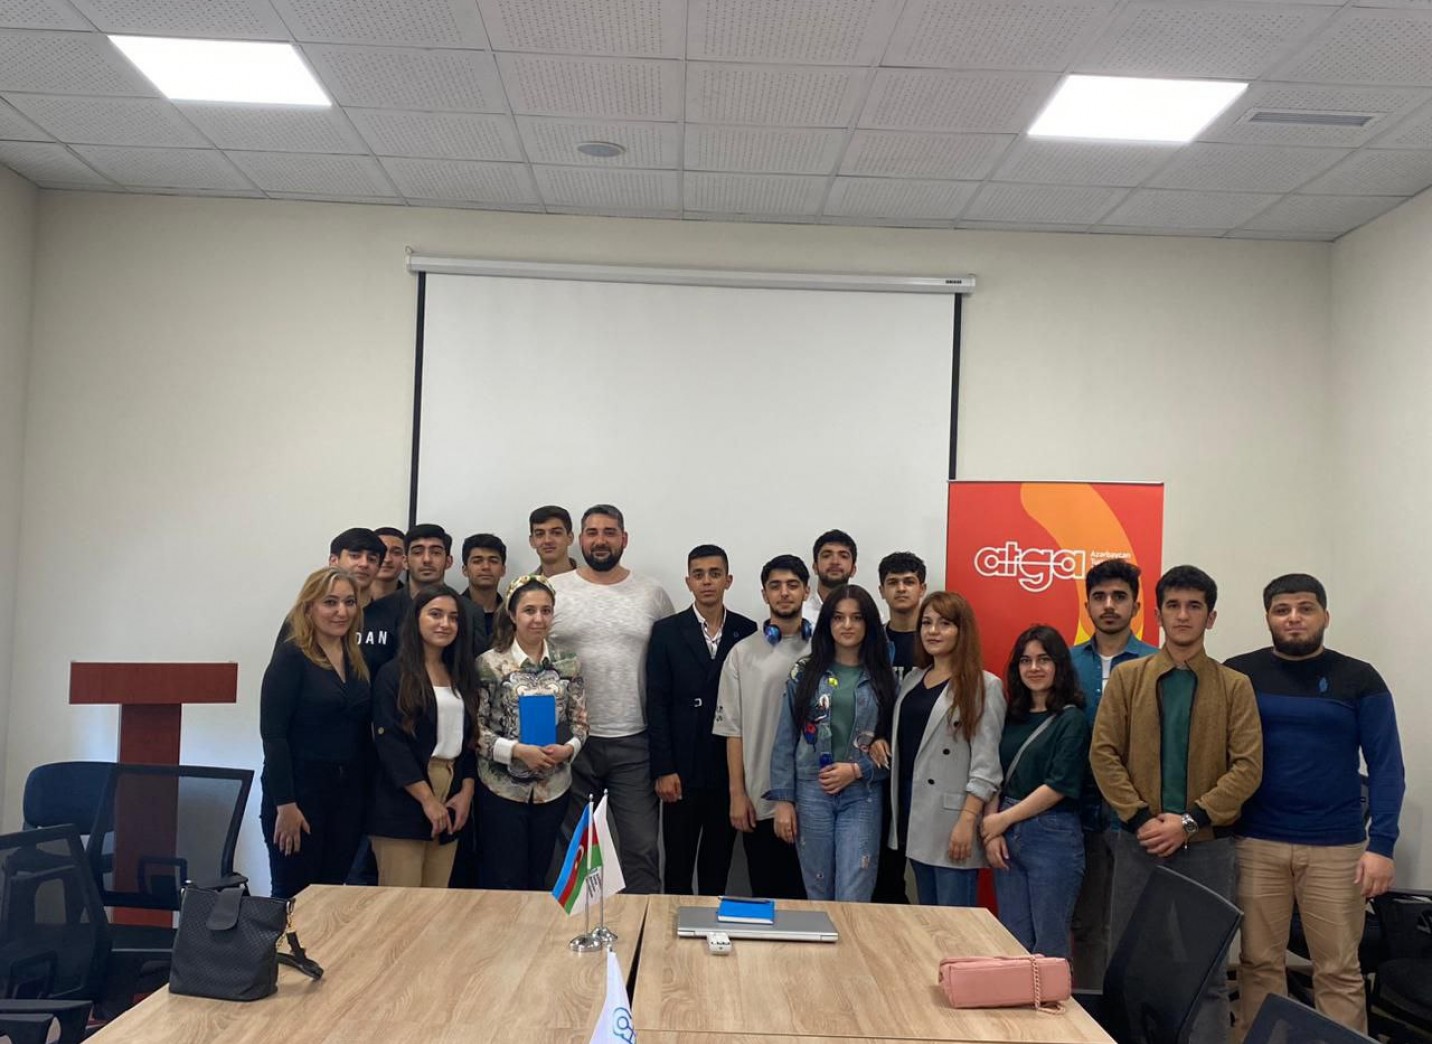 Для группы студентов, была проведена встреча на тему &quot;Роль гидов в развитии индустрии туризма Азербайджана&quot;